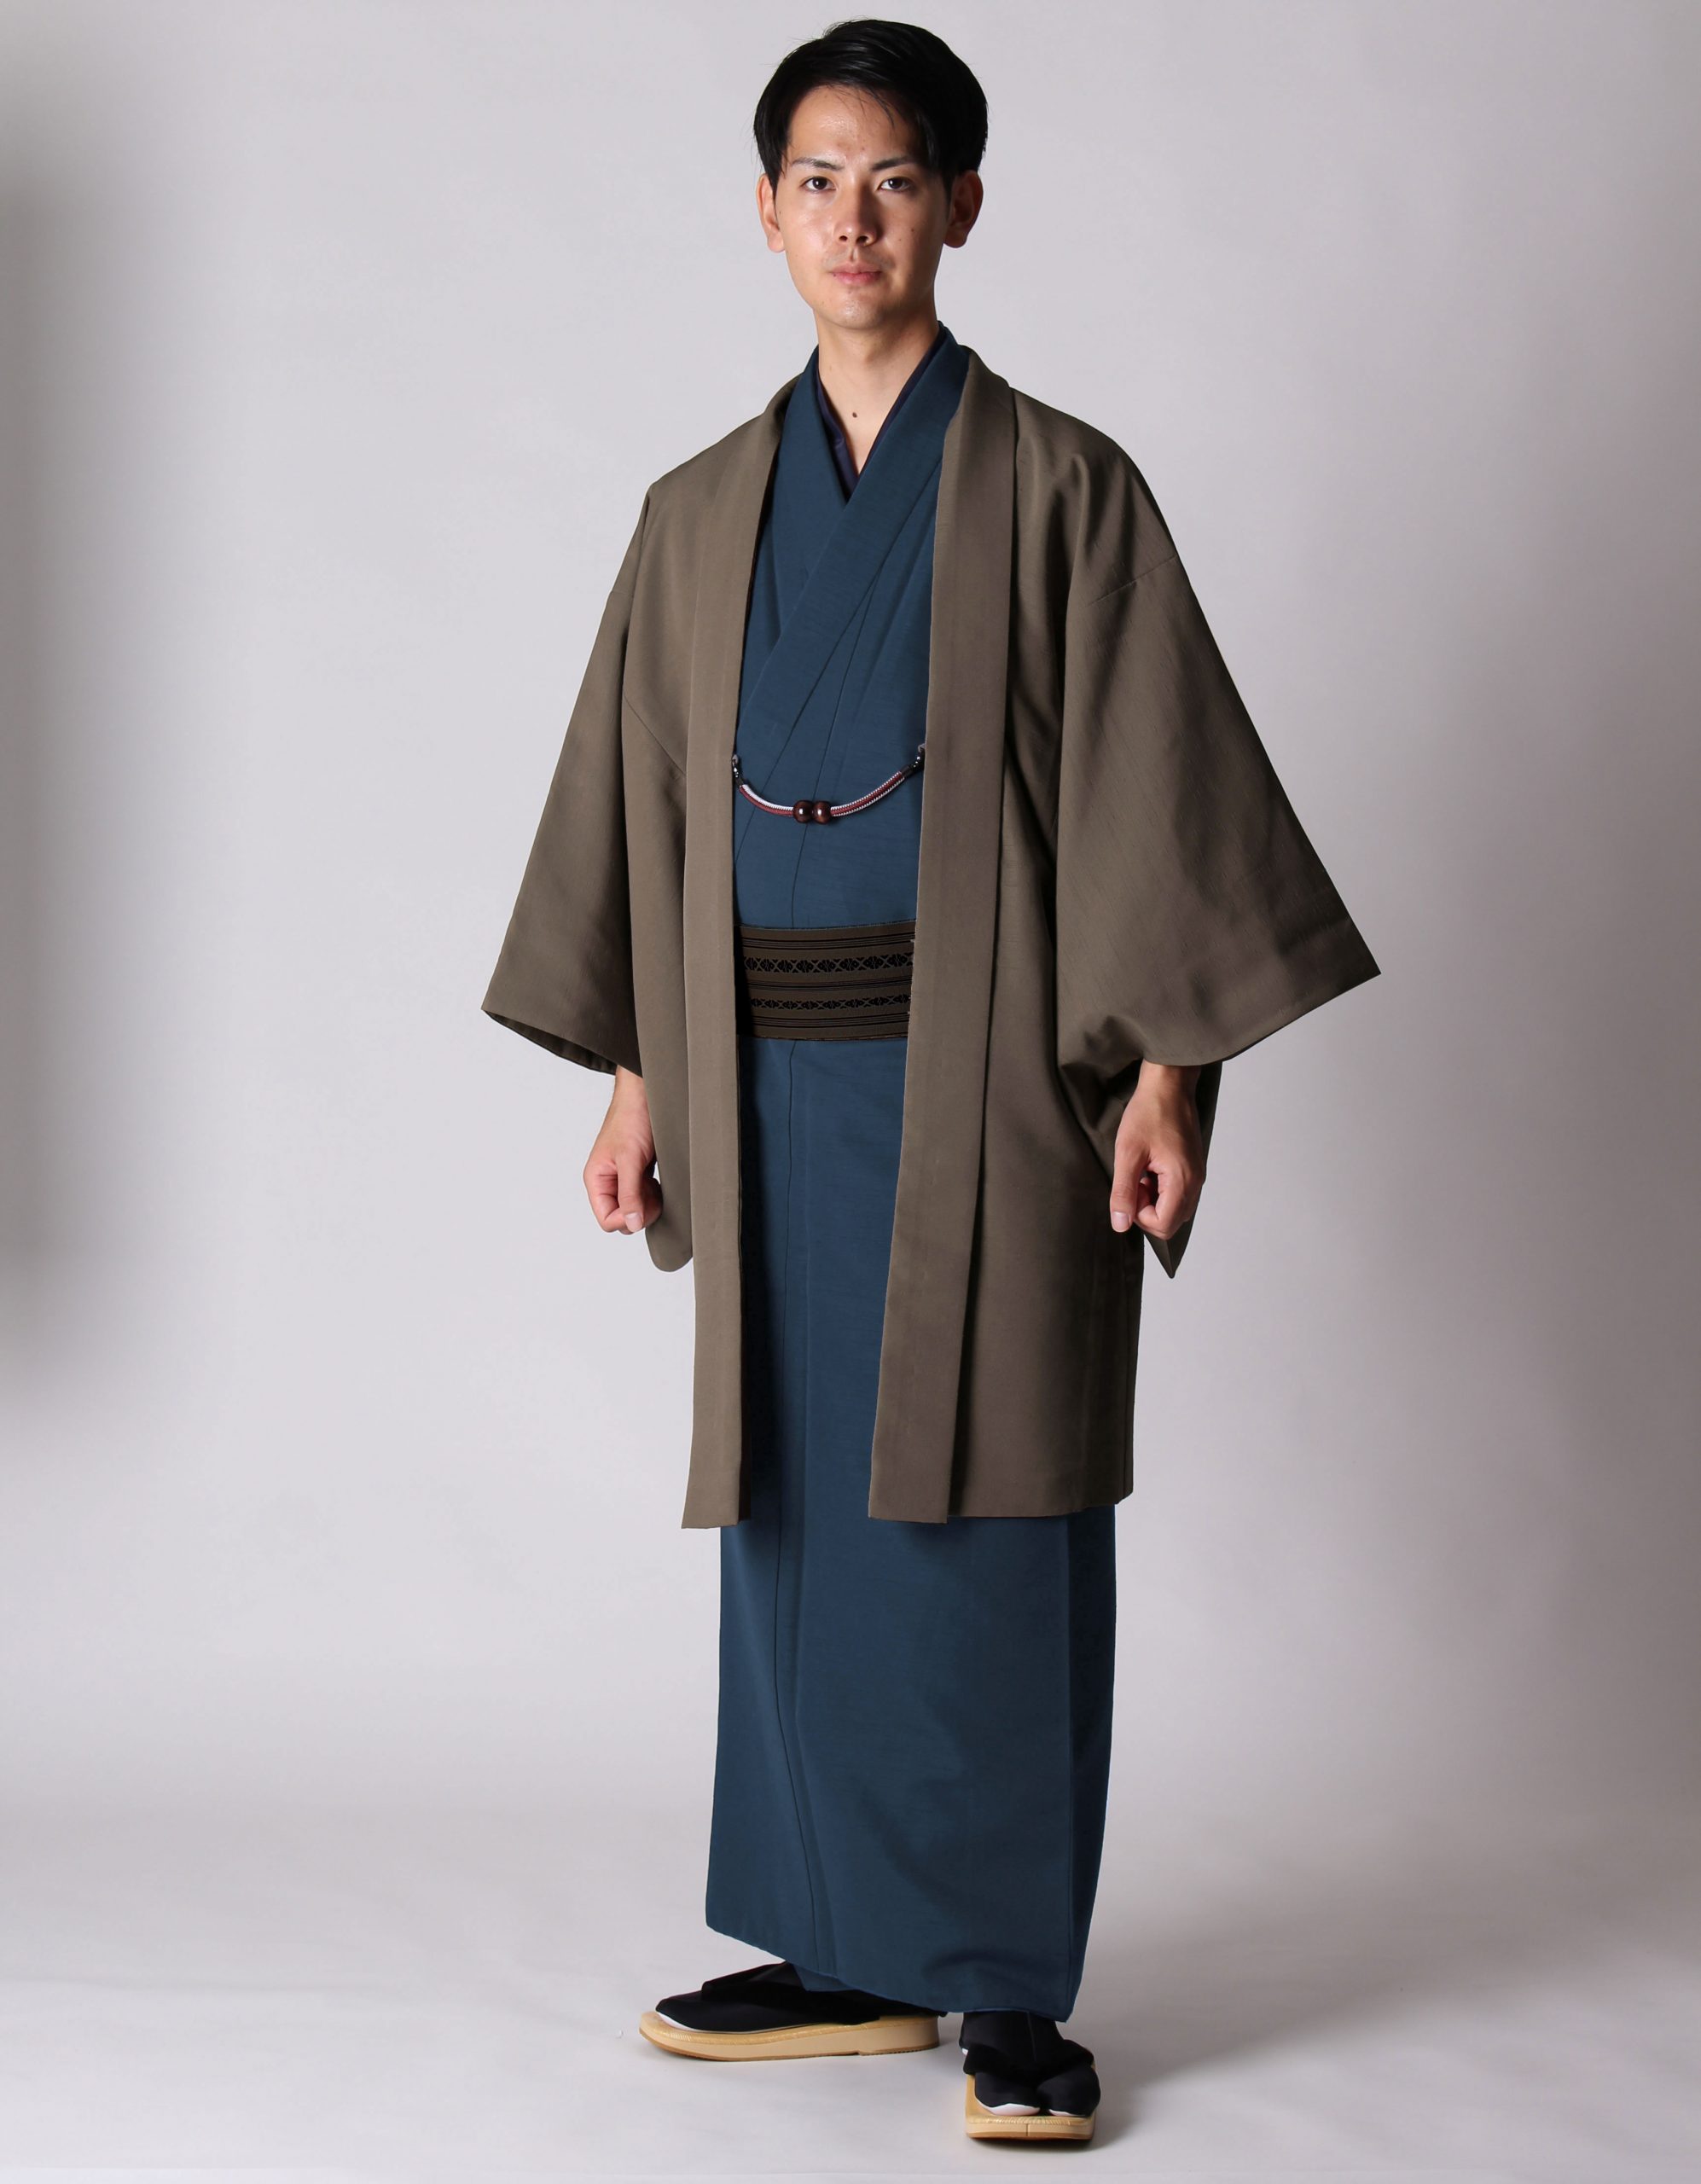 男着物の加藤商店ブログ »紺の着物と羽織の組み合わせ | 男着物の加藤